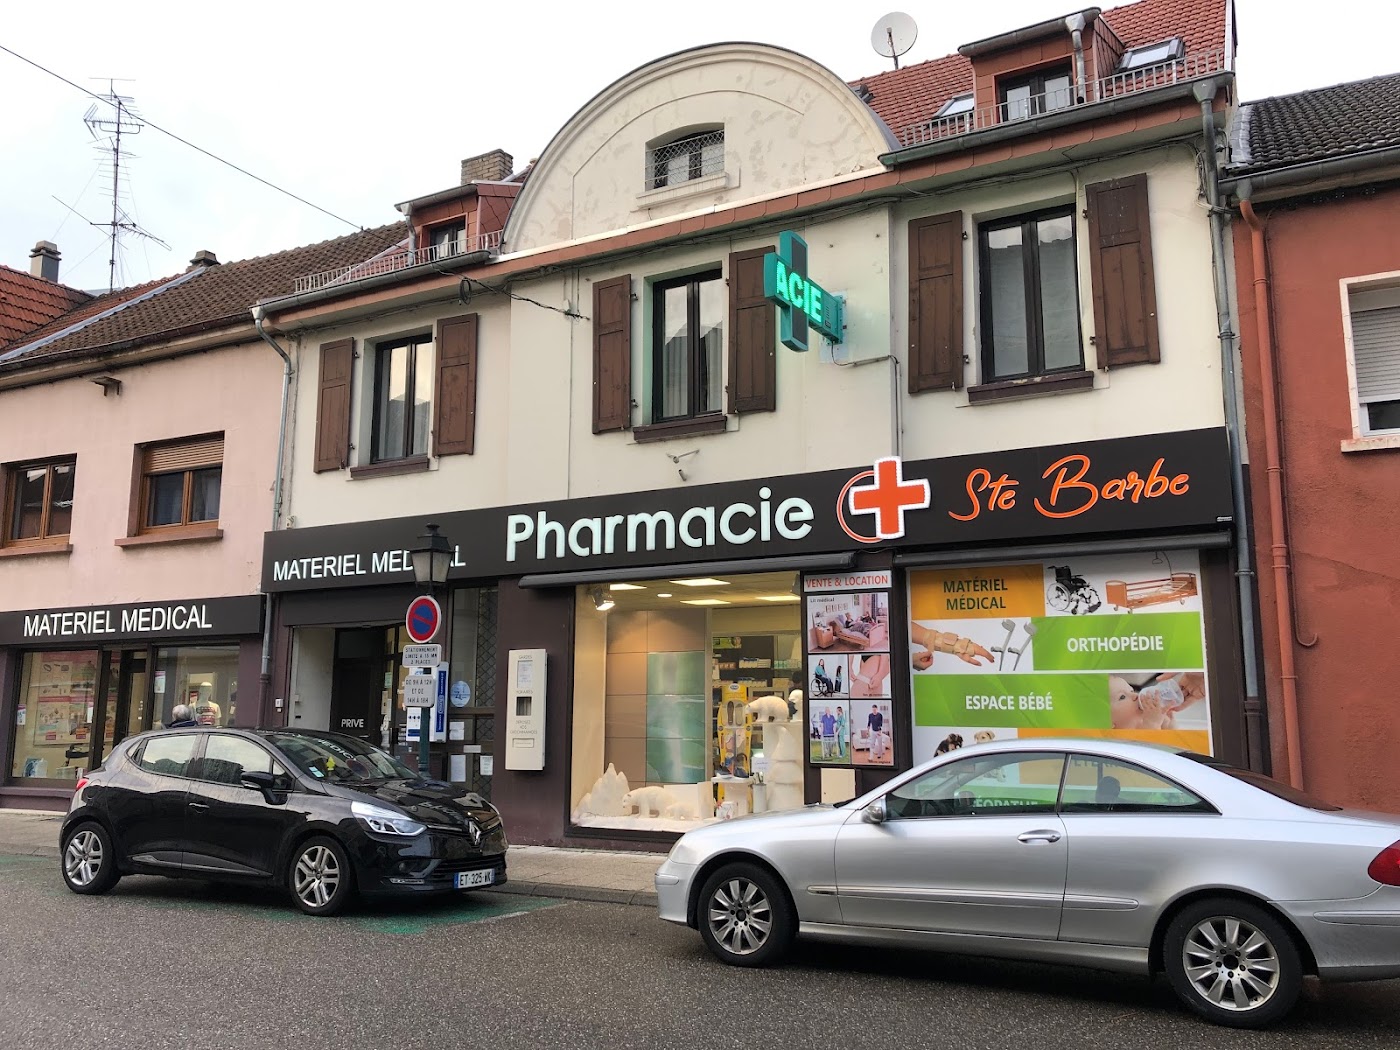 Pharmacie Sainte Barbe